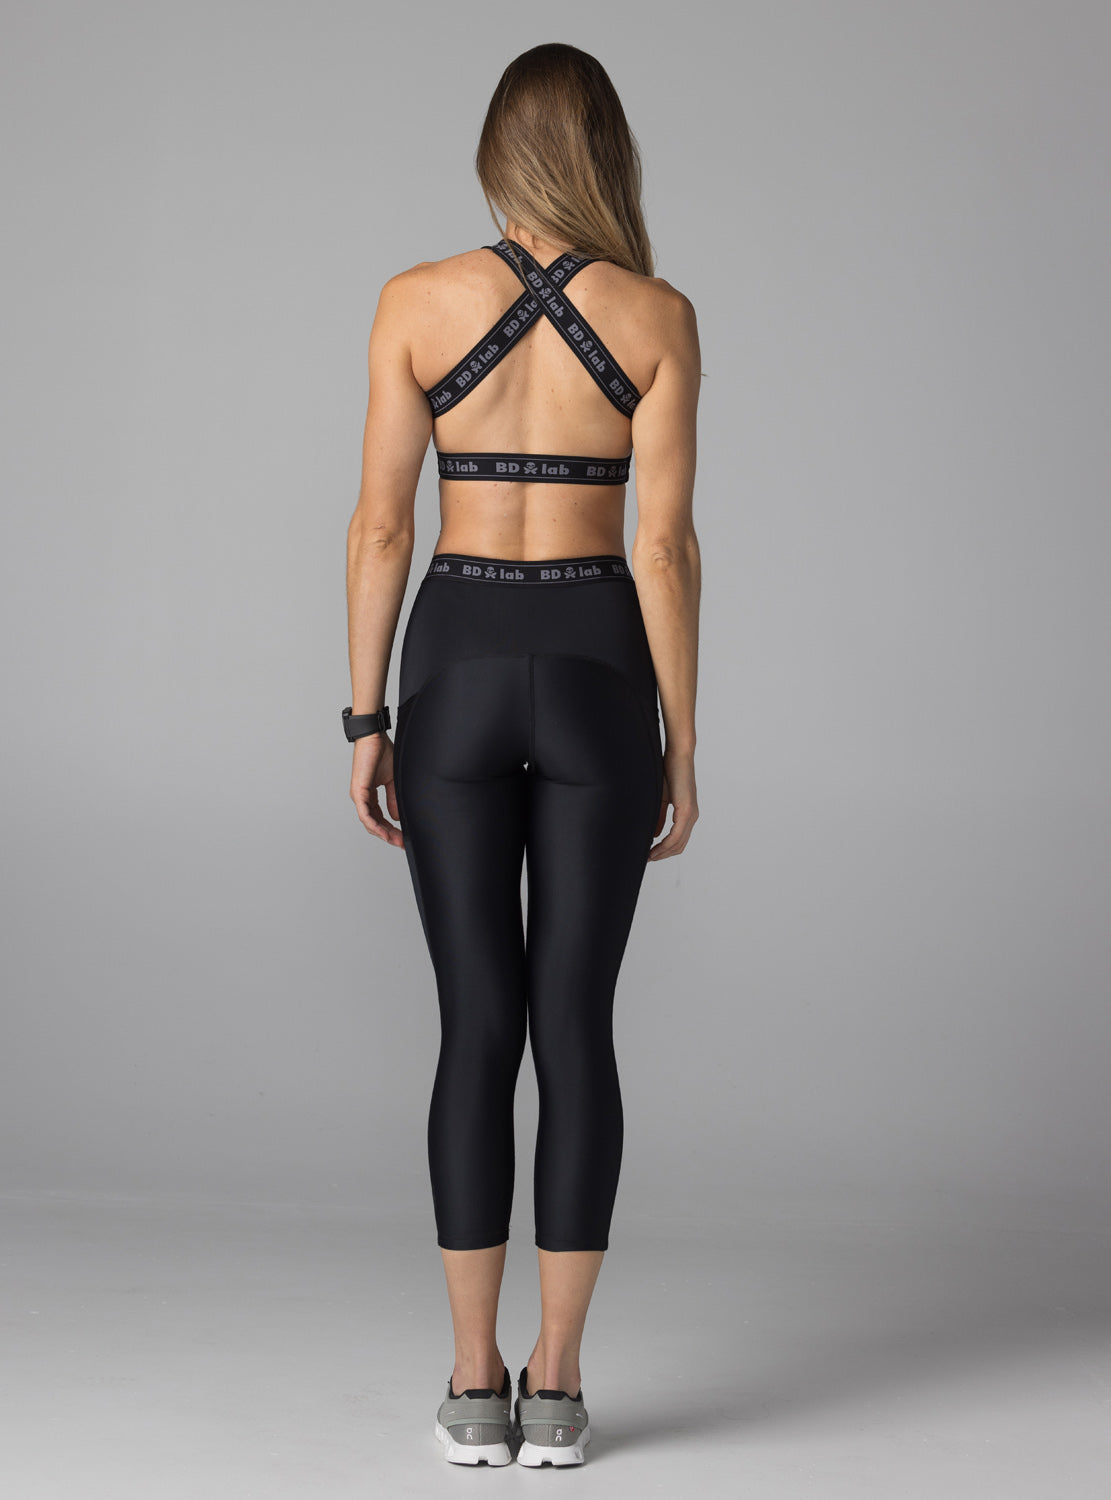 betty designs BDlab sportswear apparel for women legging